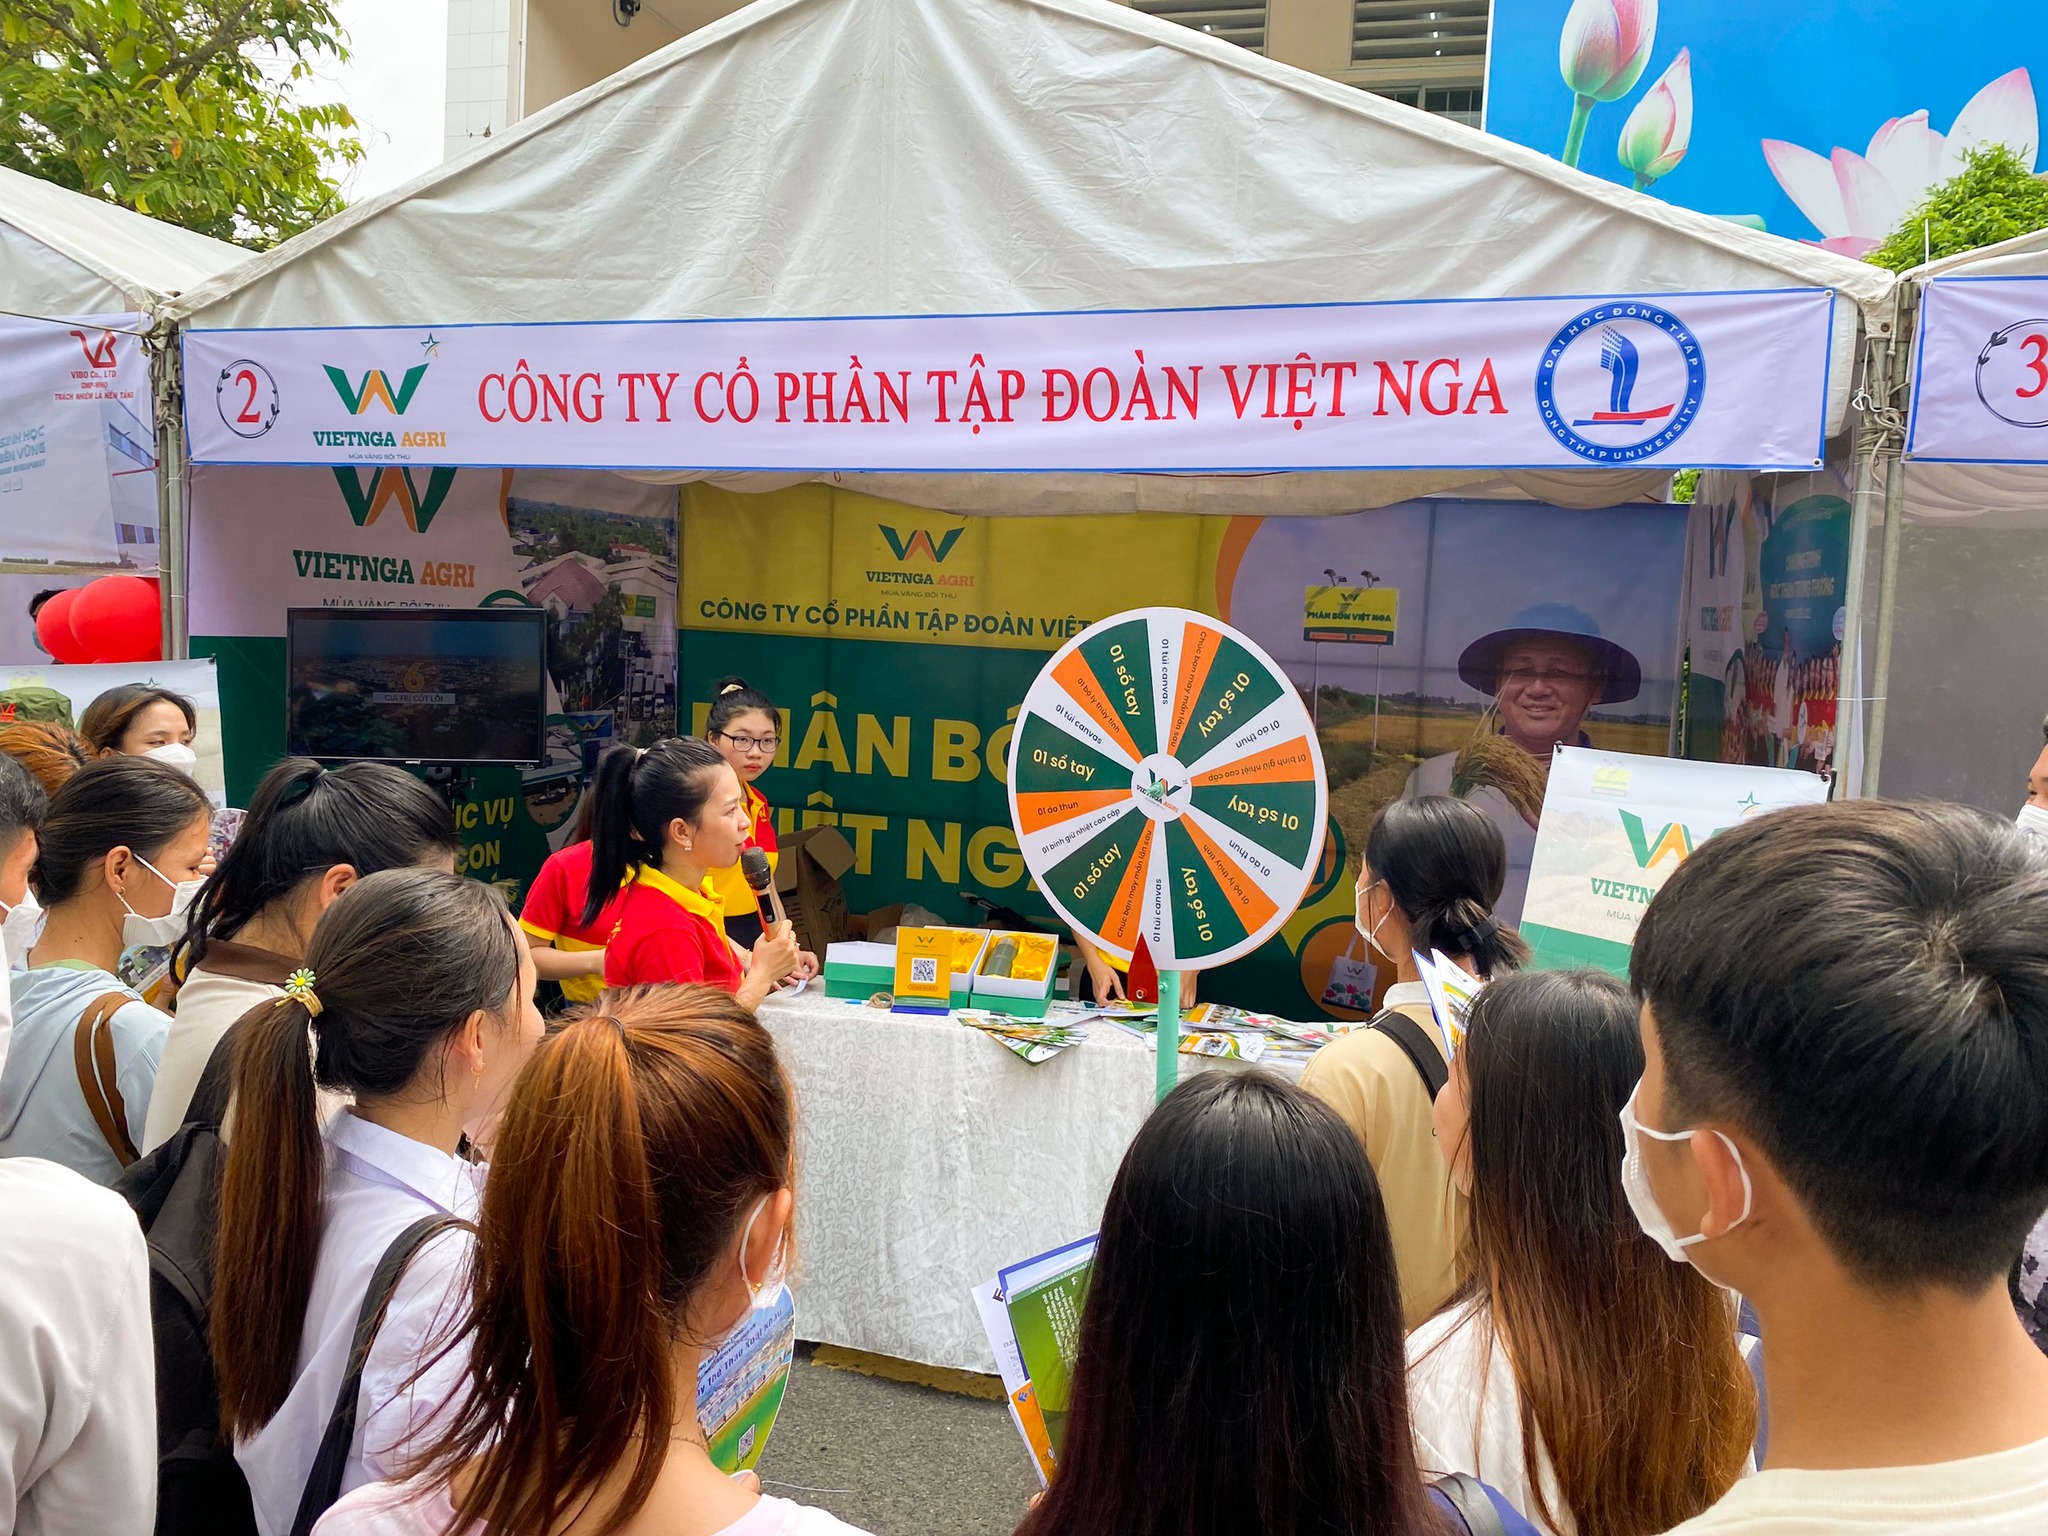 sinh viên tham gia trò chơi cùng phân bón Việt Nga